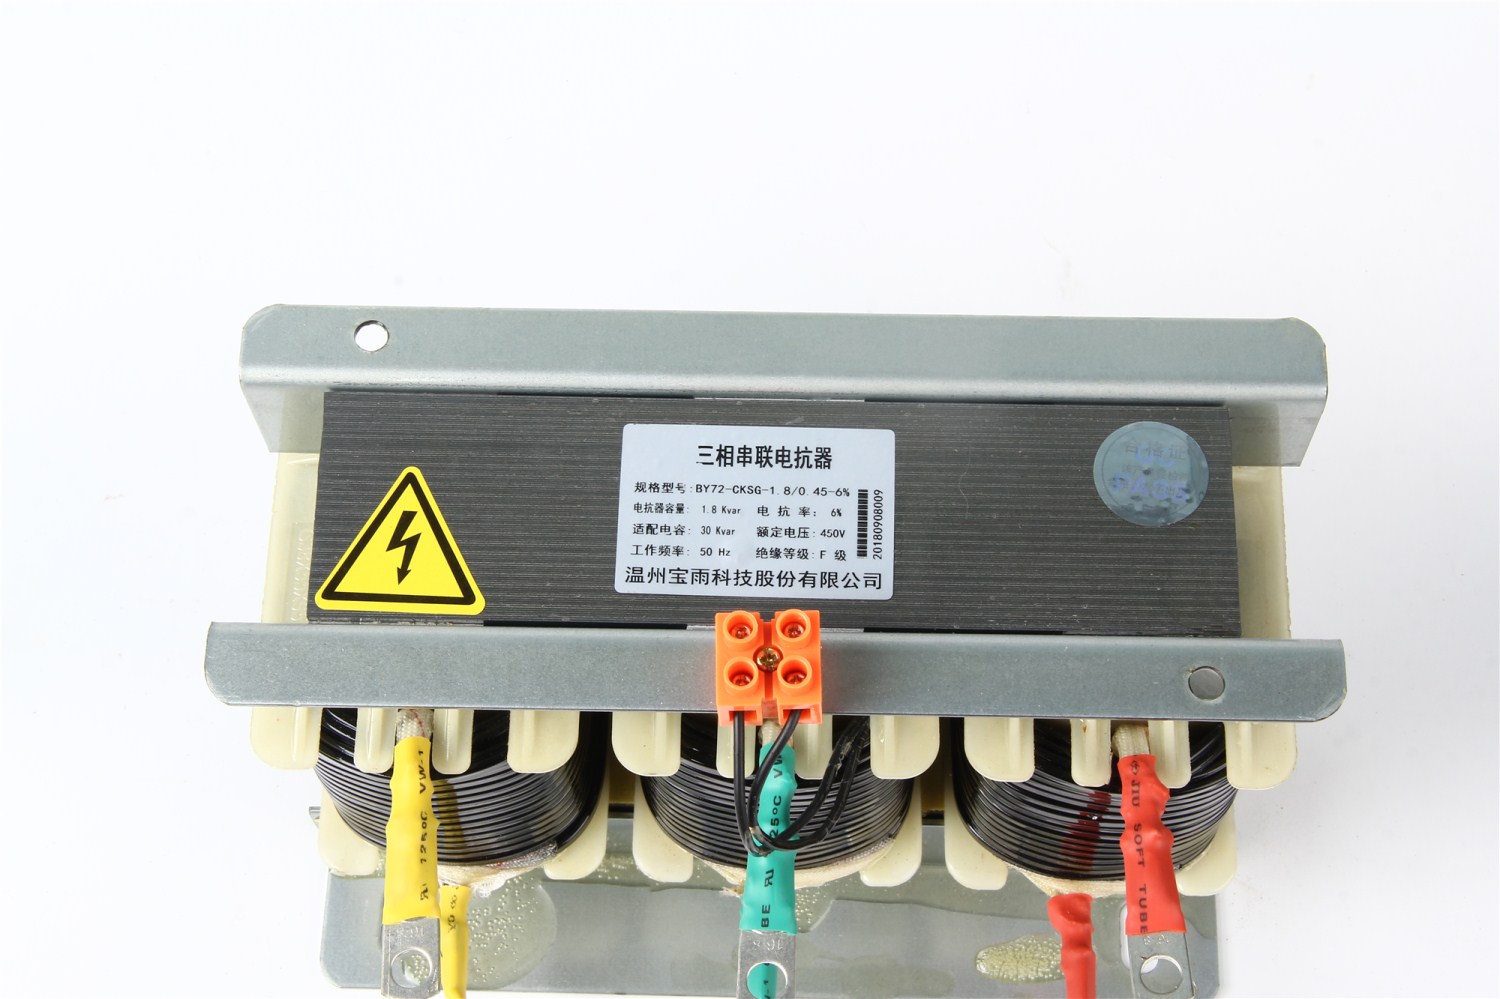 厂家直销！CKSG系列低压串联电抗器0.6 型号：CKSG-0.6/0.45-6图片